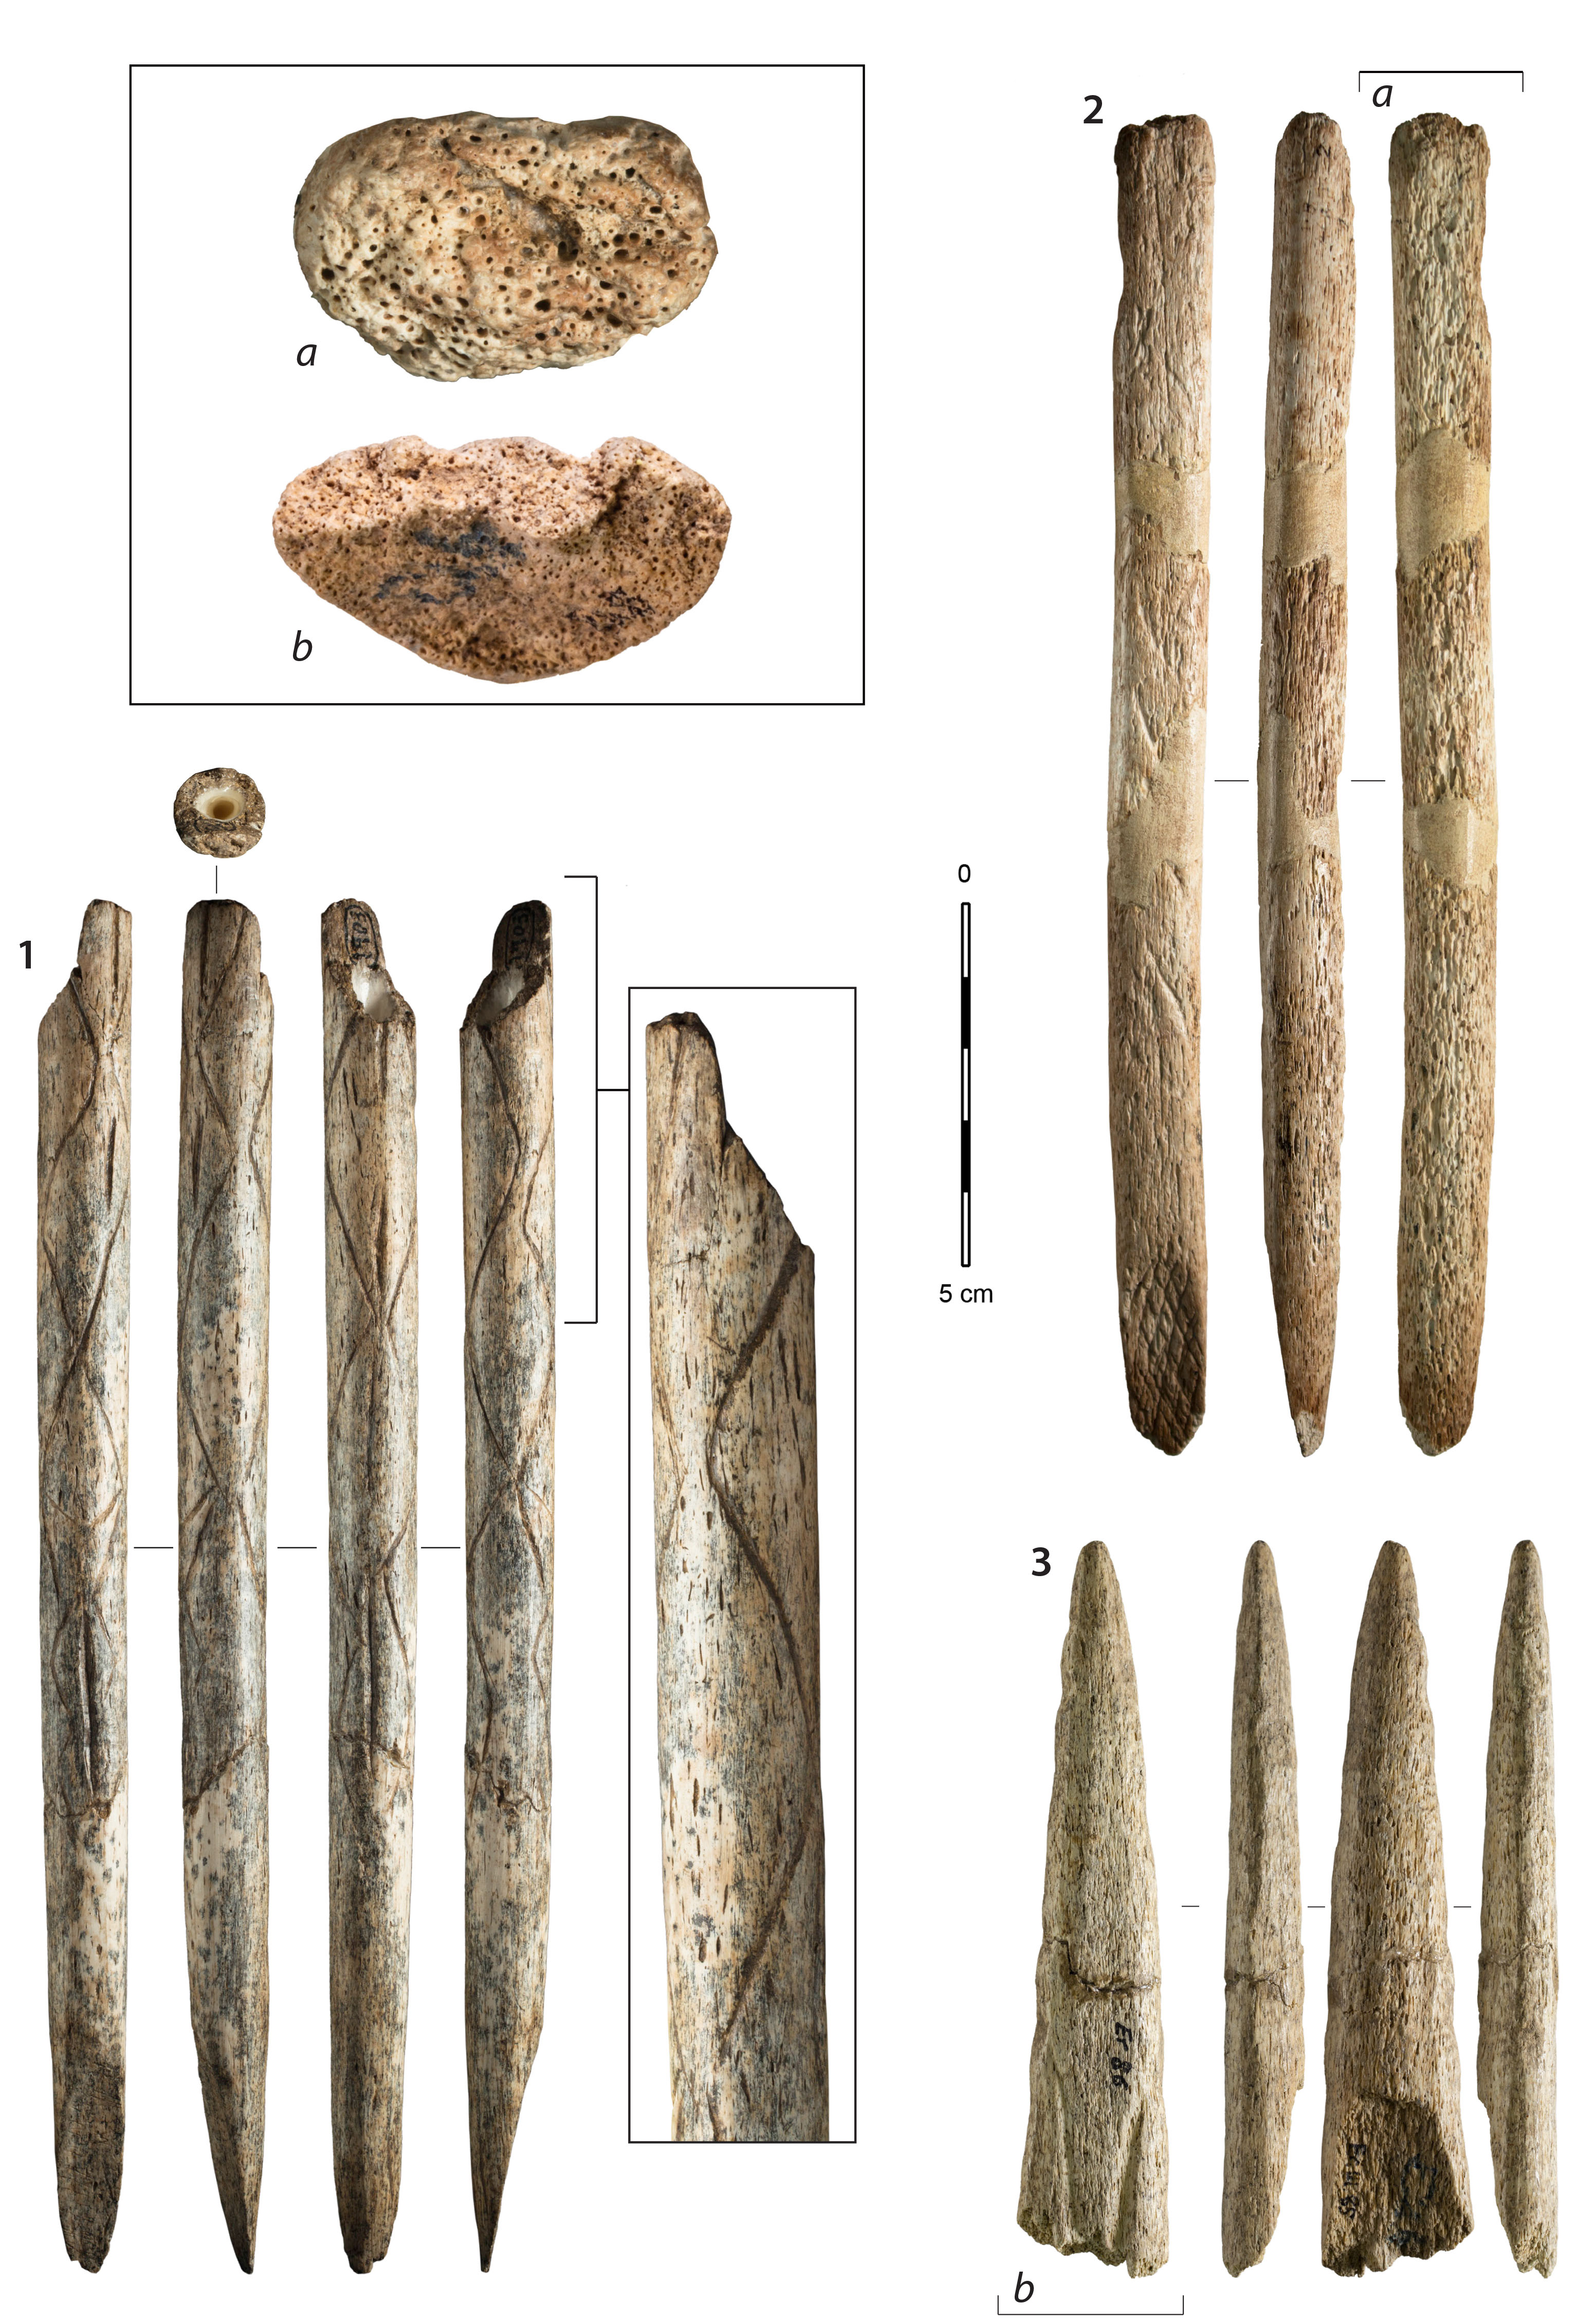 Figure 1. Exemples d’artefacts fabriqués en os de baleine retrouvés dans les collections magdaléniennes cantabriques, 1 : fragment de préhampe décorée (El Pendo), 2 : objet sur baguette indéterminé (Tito Bustillo), 3 : fragment distal de pointe de projectile (Ermittia), a et b : zooms sur la matière. 